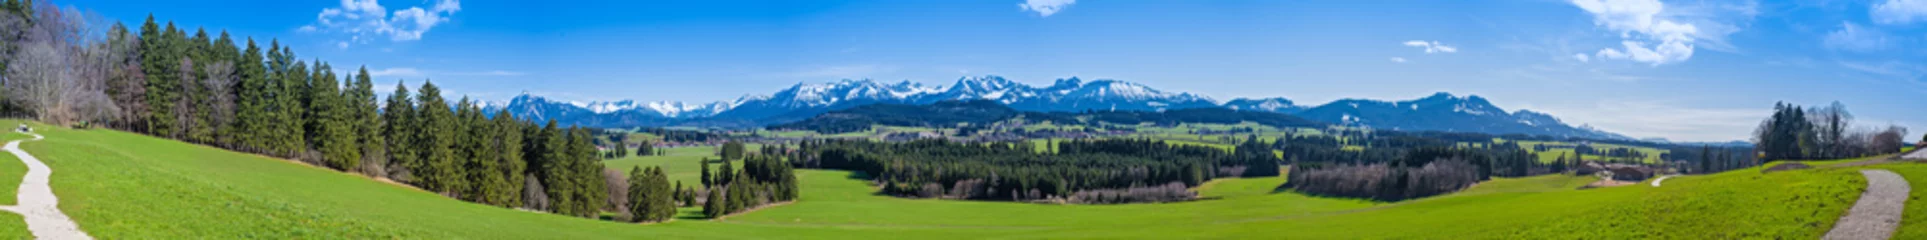 Foto auf Leinwand Wanderweg durch das Allgäu mit Blick auf die Alpen - hochauflösendes Panorama © reichdernatur